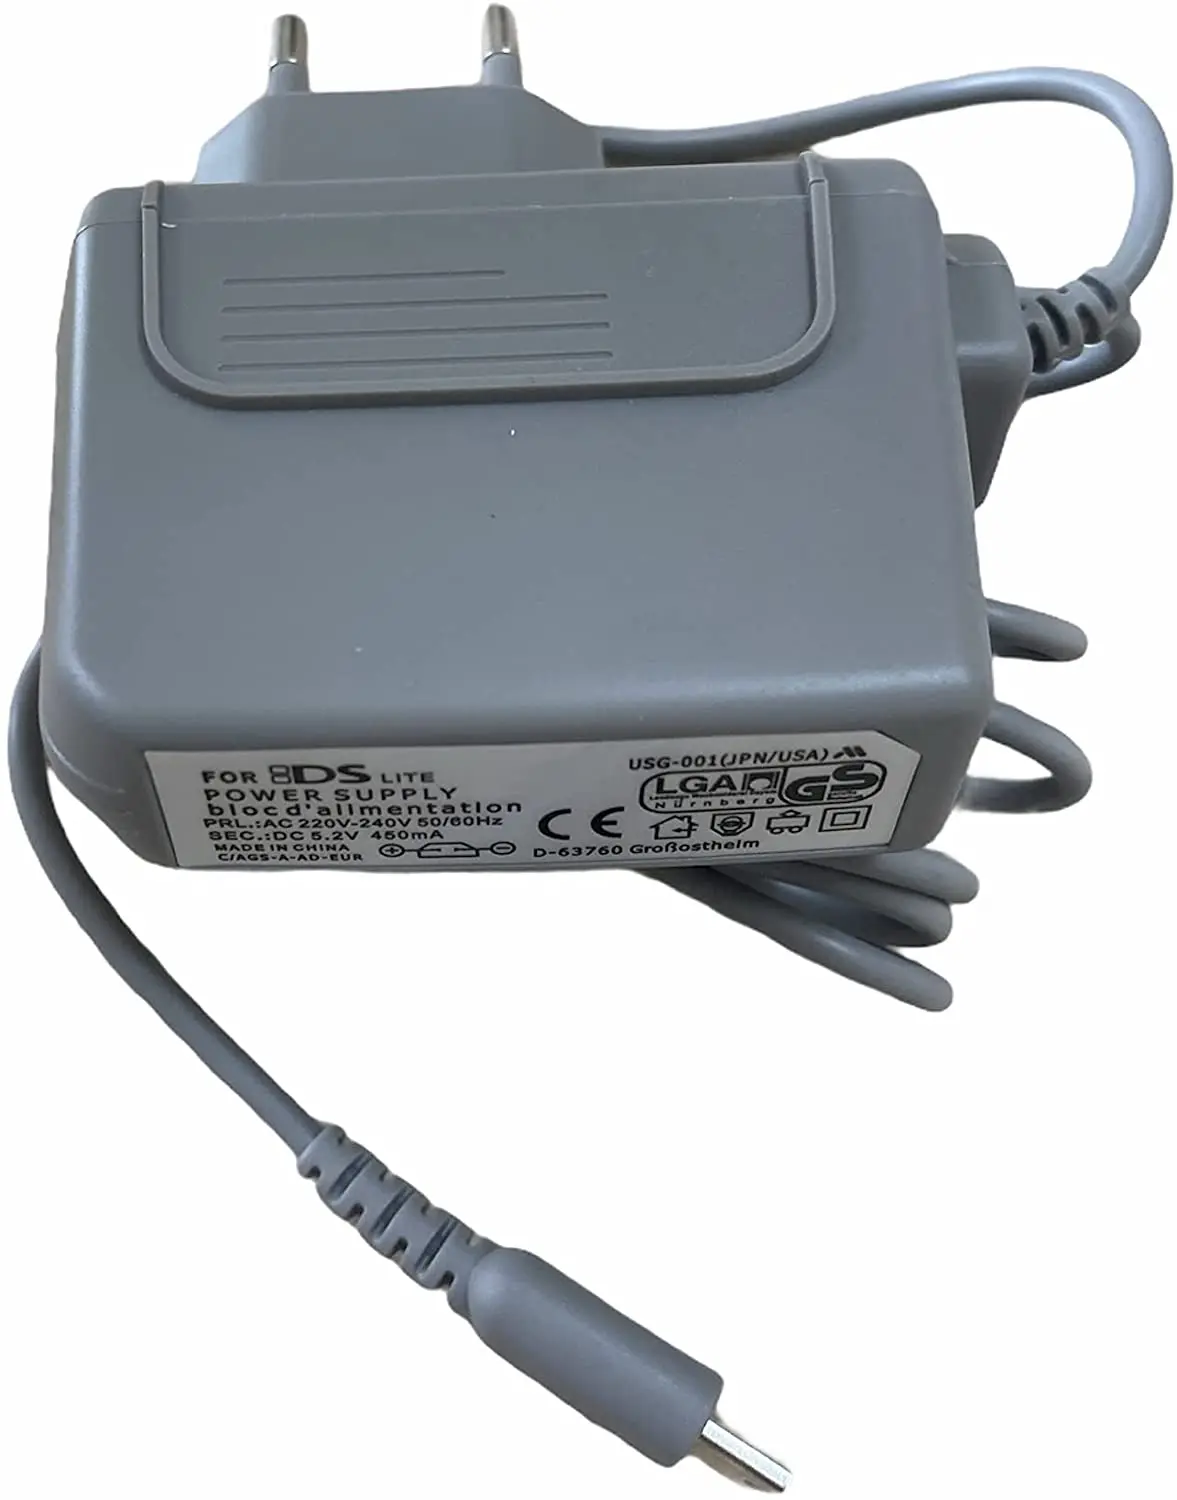 Cavo caricabatterie alimentatore grigio per console Nintendo DS Lite spedizione gratuita dalla spagna